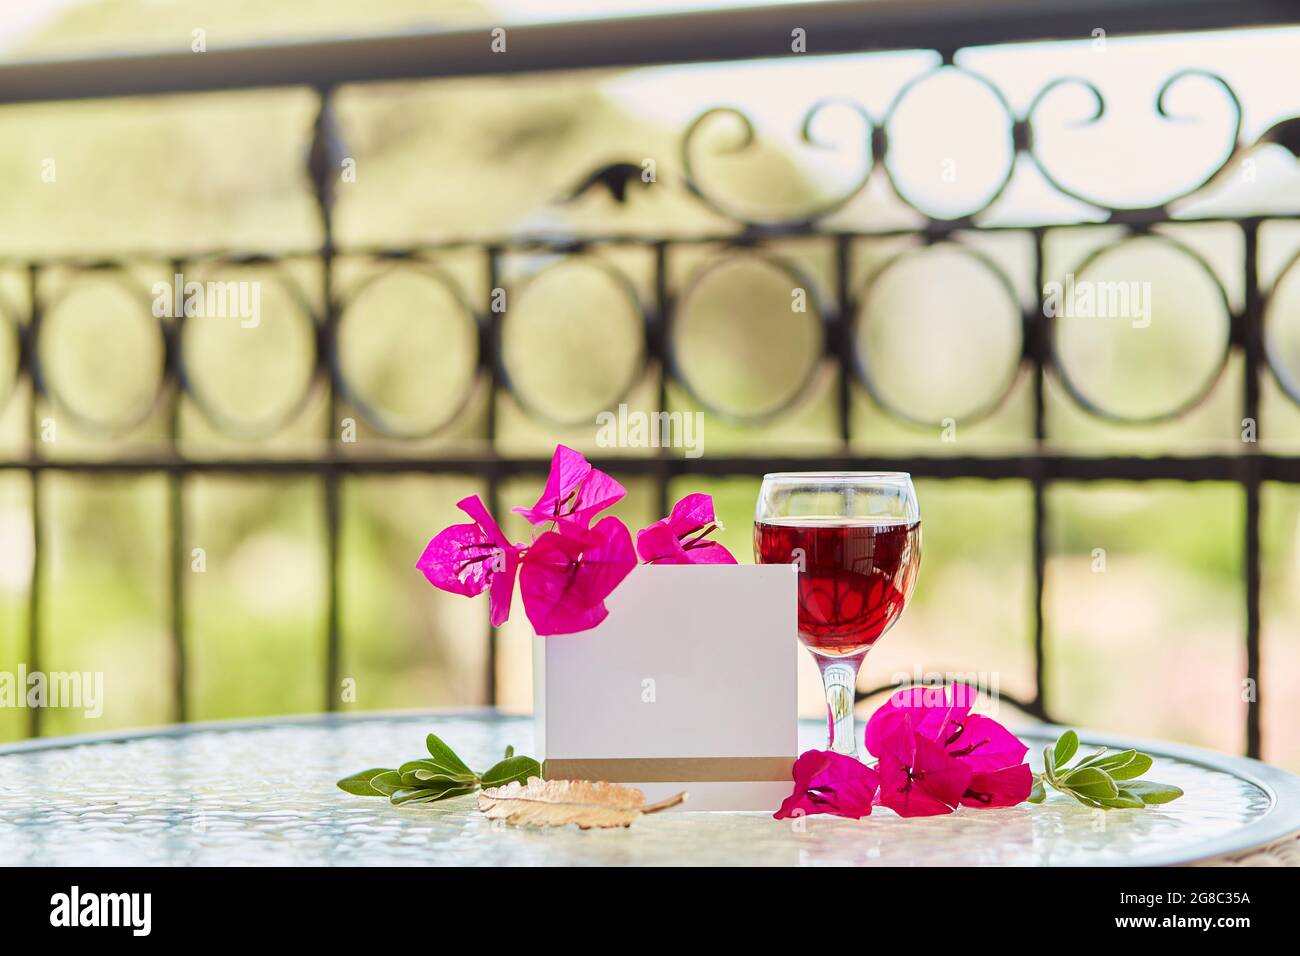 Glas Rotwein, rosa Blumen von Bougainvilleaon Garten Hintergrund. Nachbau einer Postkarte oder Einladung. Speicherplatz kopieren Stockfoto